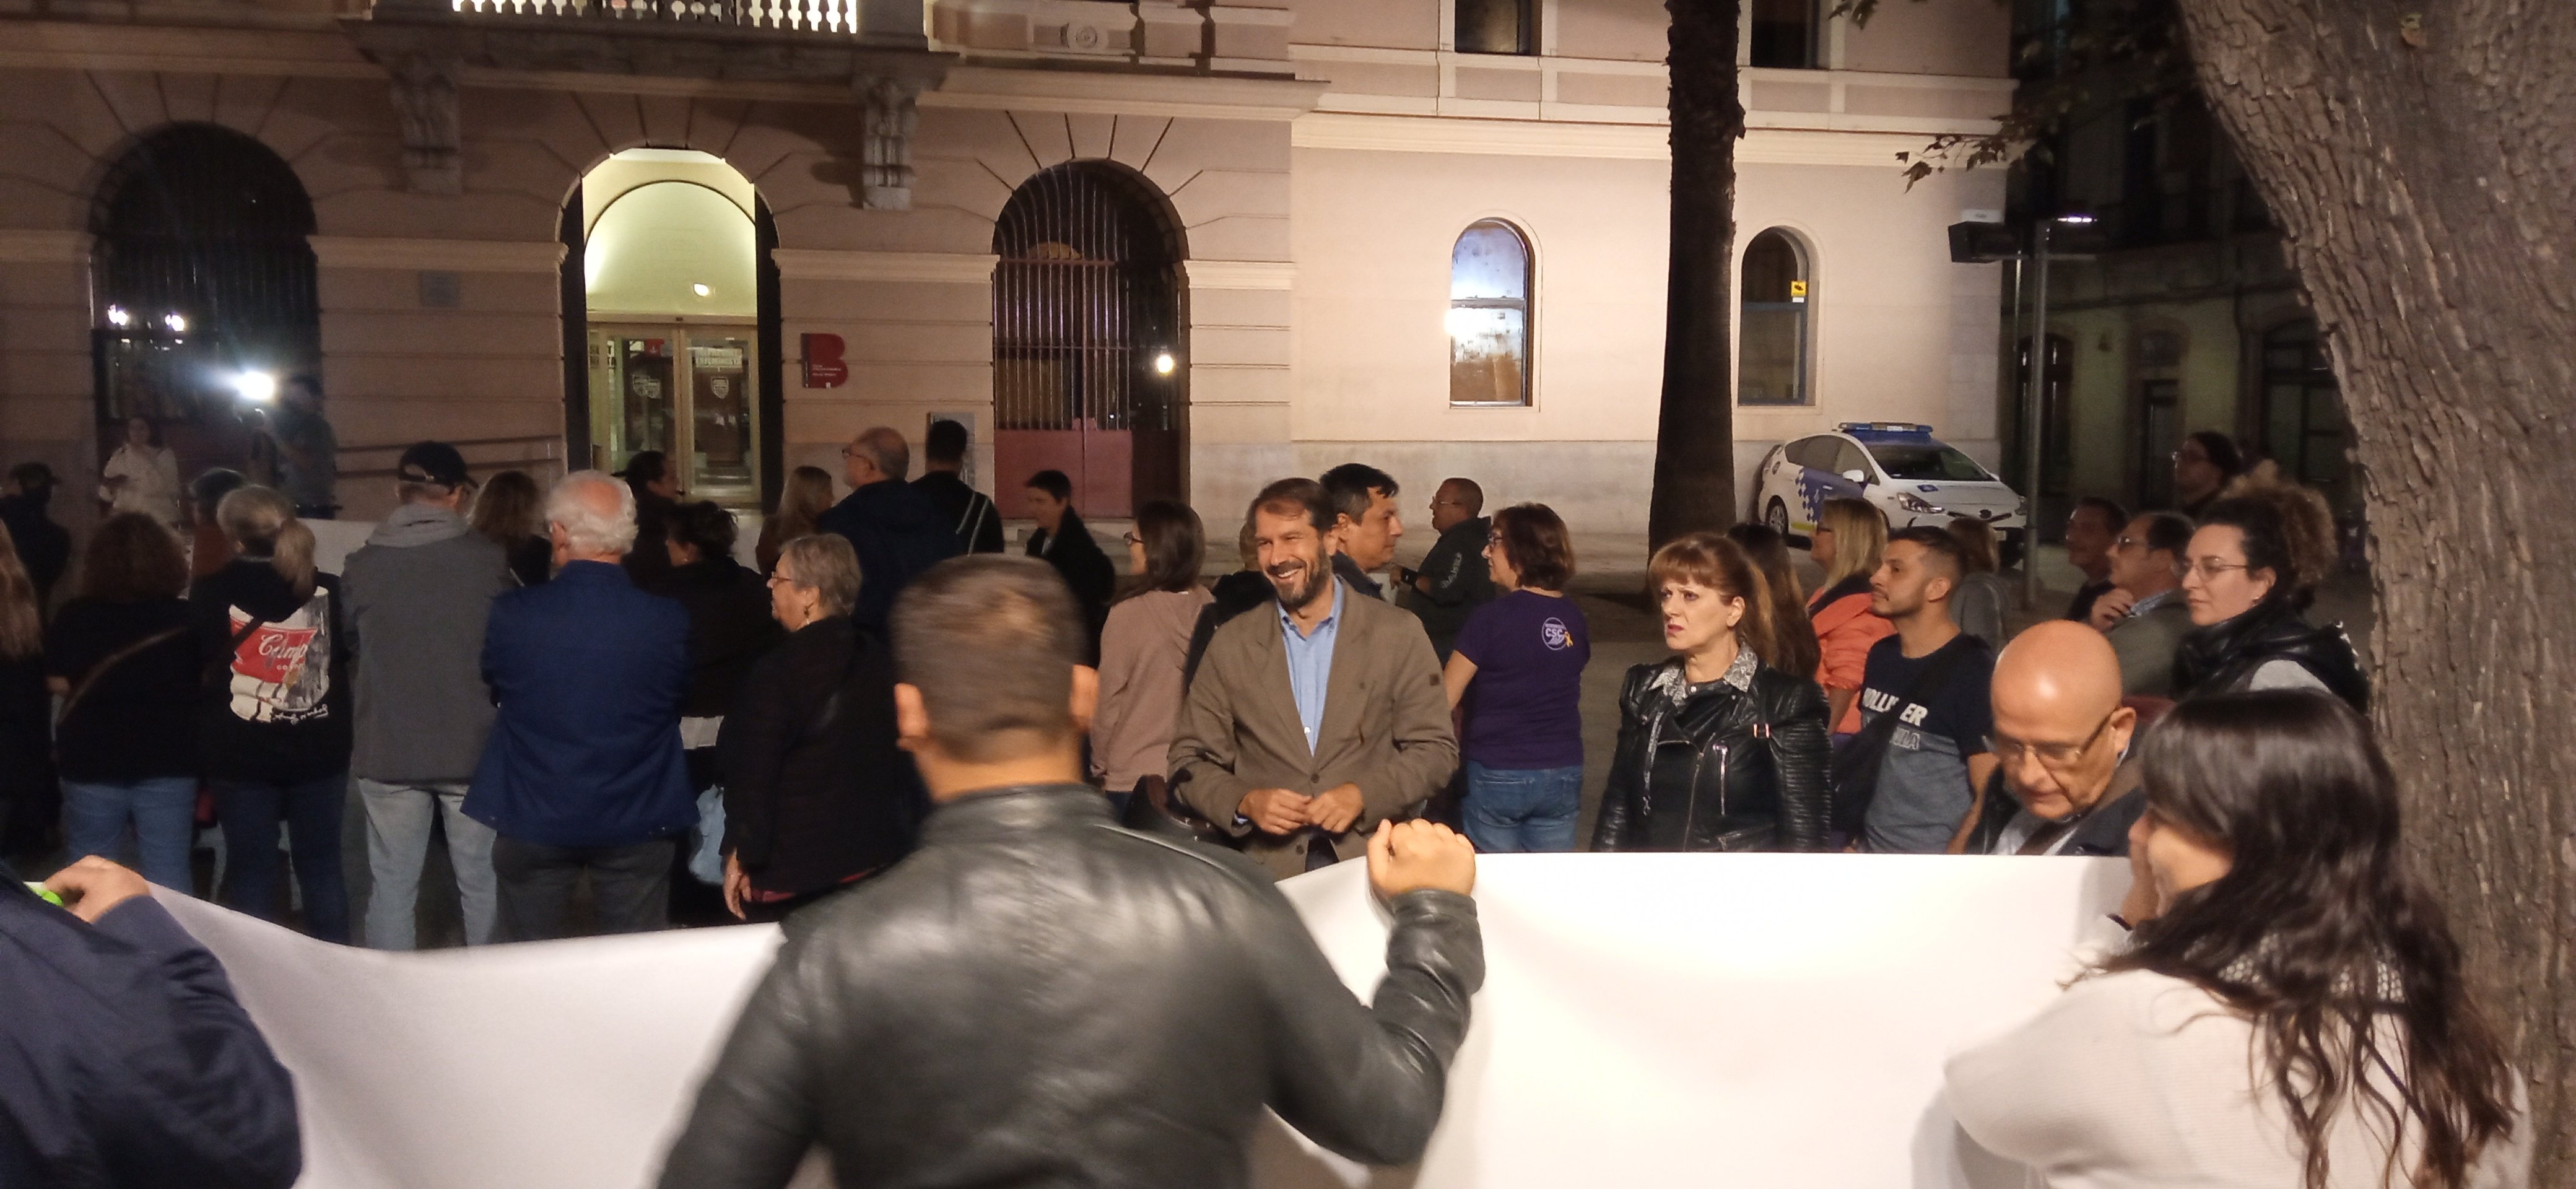 Malestar por la presencia de Vox en protestas vecinales en Barcelona: "Tenemos que desenmascarar al fascismo"